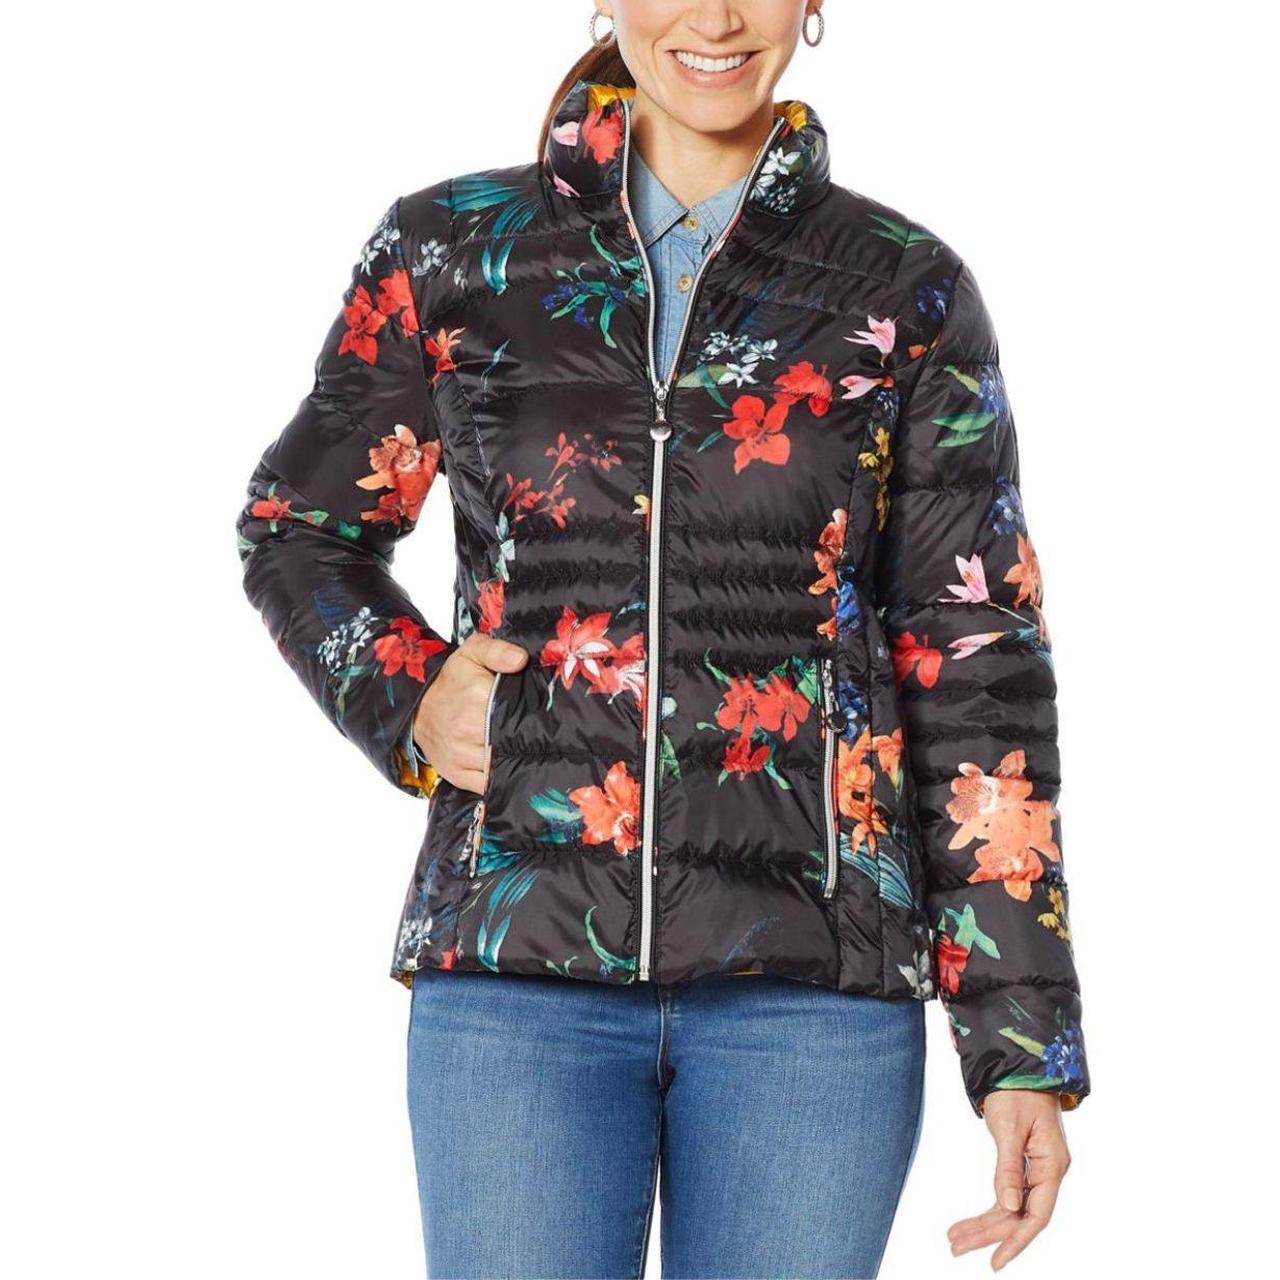 Laurier & Co Packable Multi Floral Puffer Jacket size M - Depop